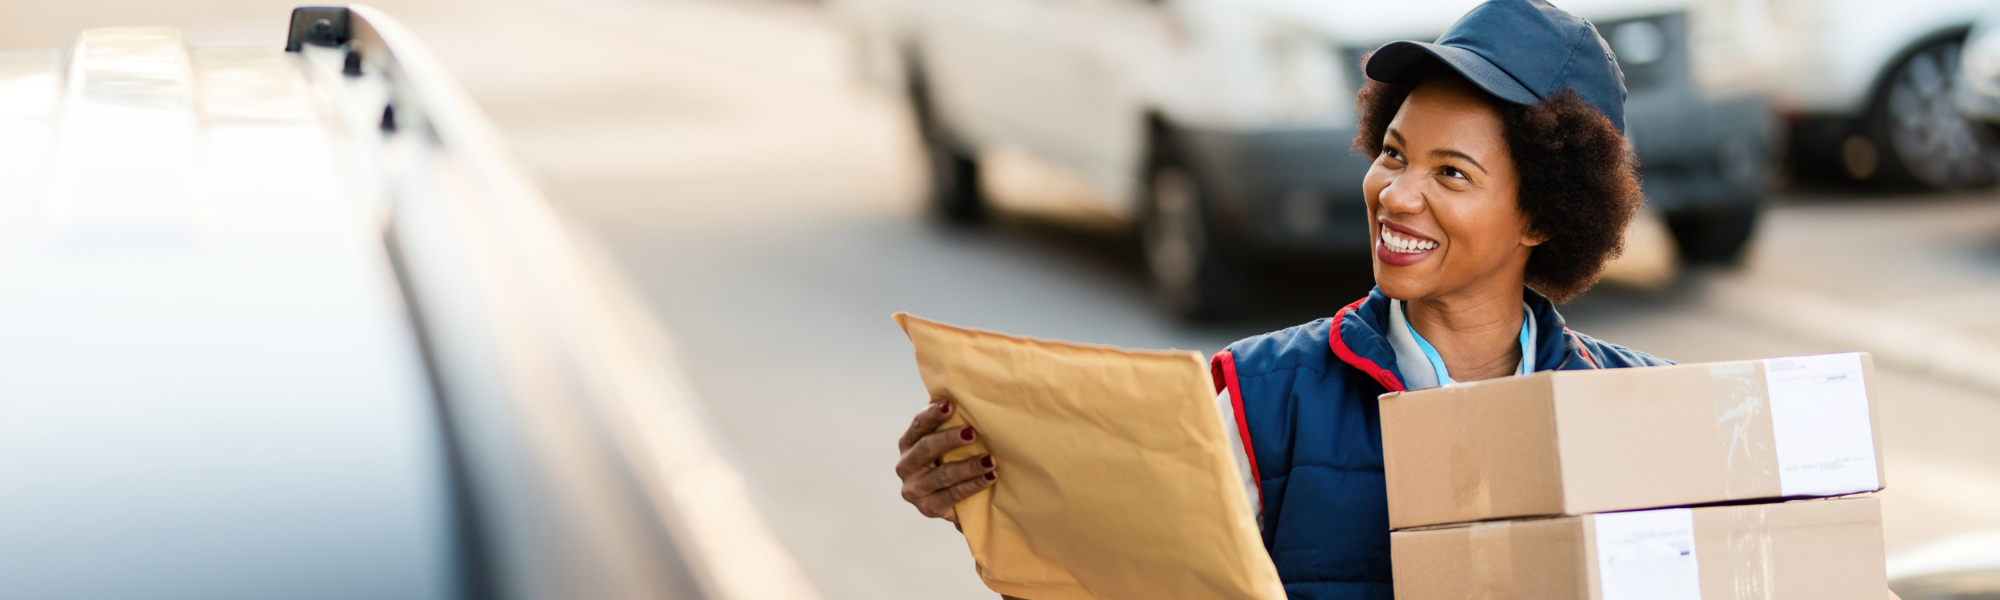 Postal worker delivering package 